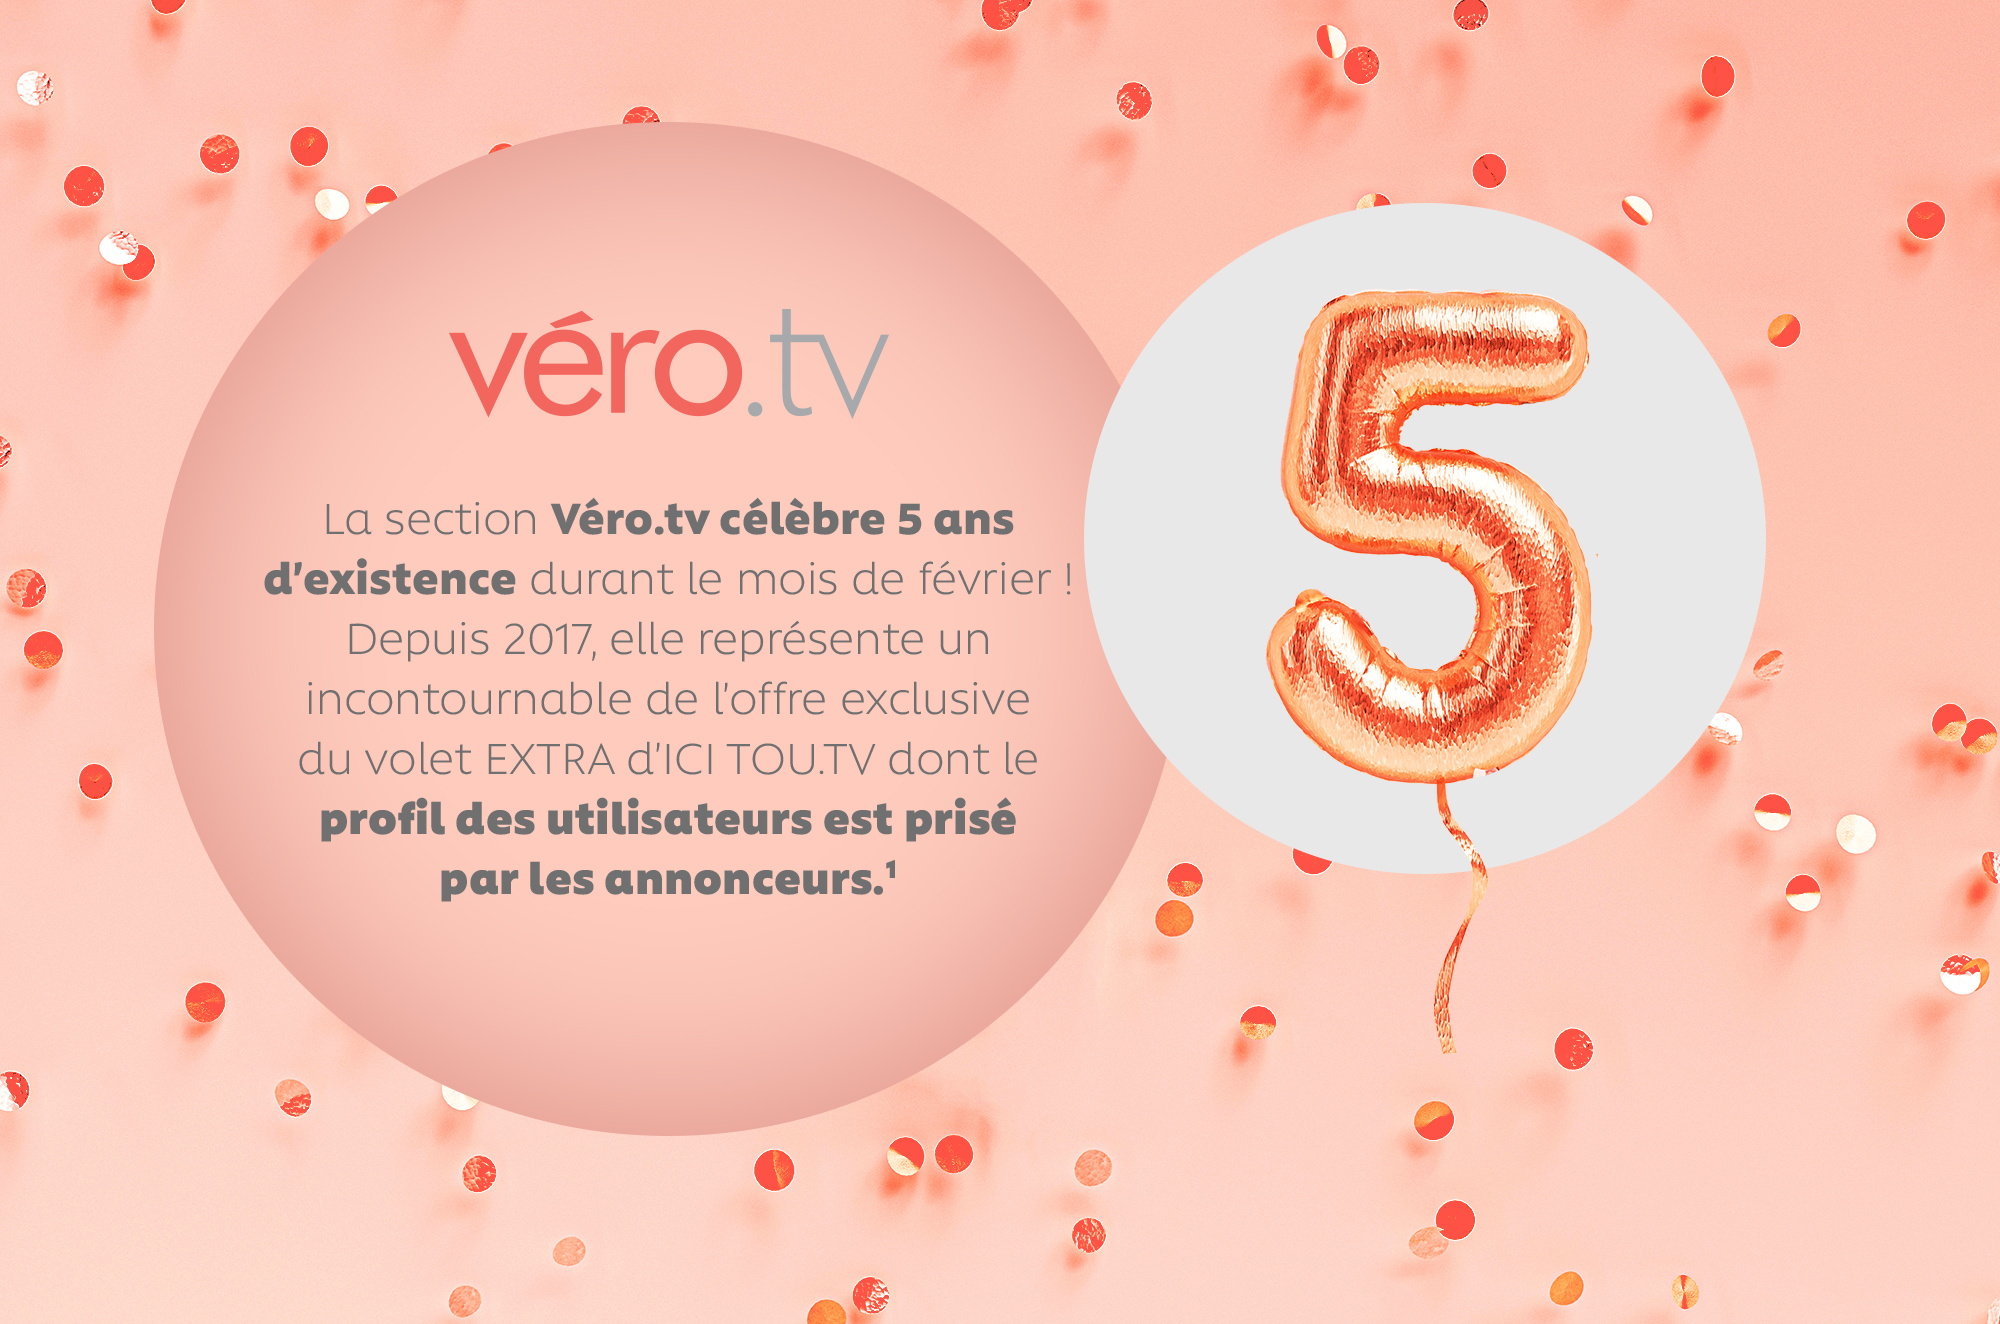 La section Véro.tv célèbre 5 ans d'existence durant le mois de février ! Depuis 2017, elle représente un incontournable de l'offre exclusive du volet EXTRA d'ICI TOU.TV dont le profil des utilisateurs est prisé par les annonceurs.